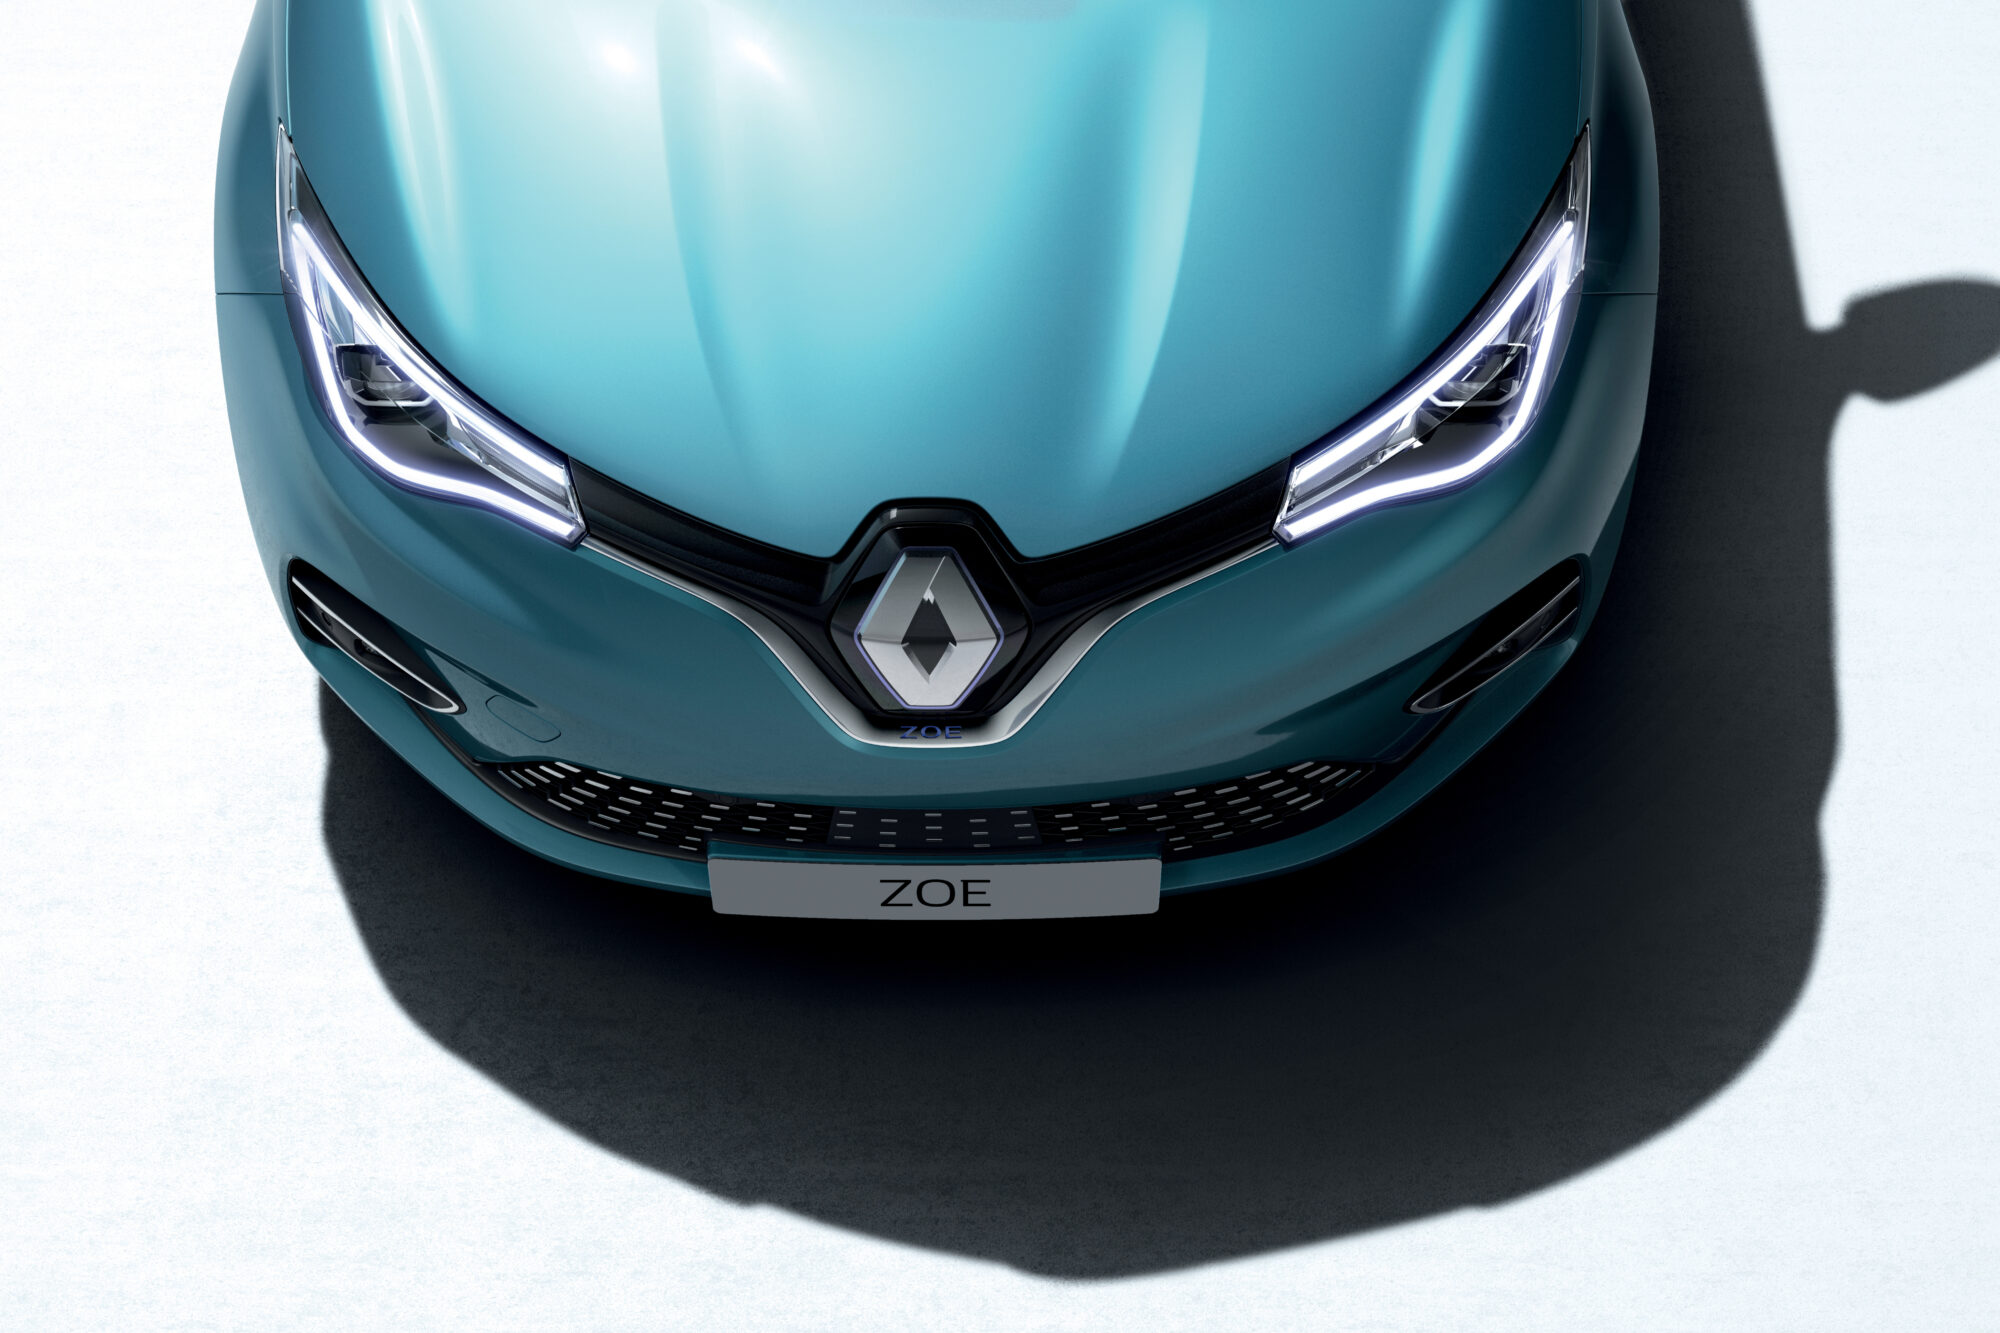 2019 - New Renault ZOE